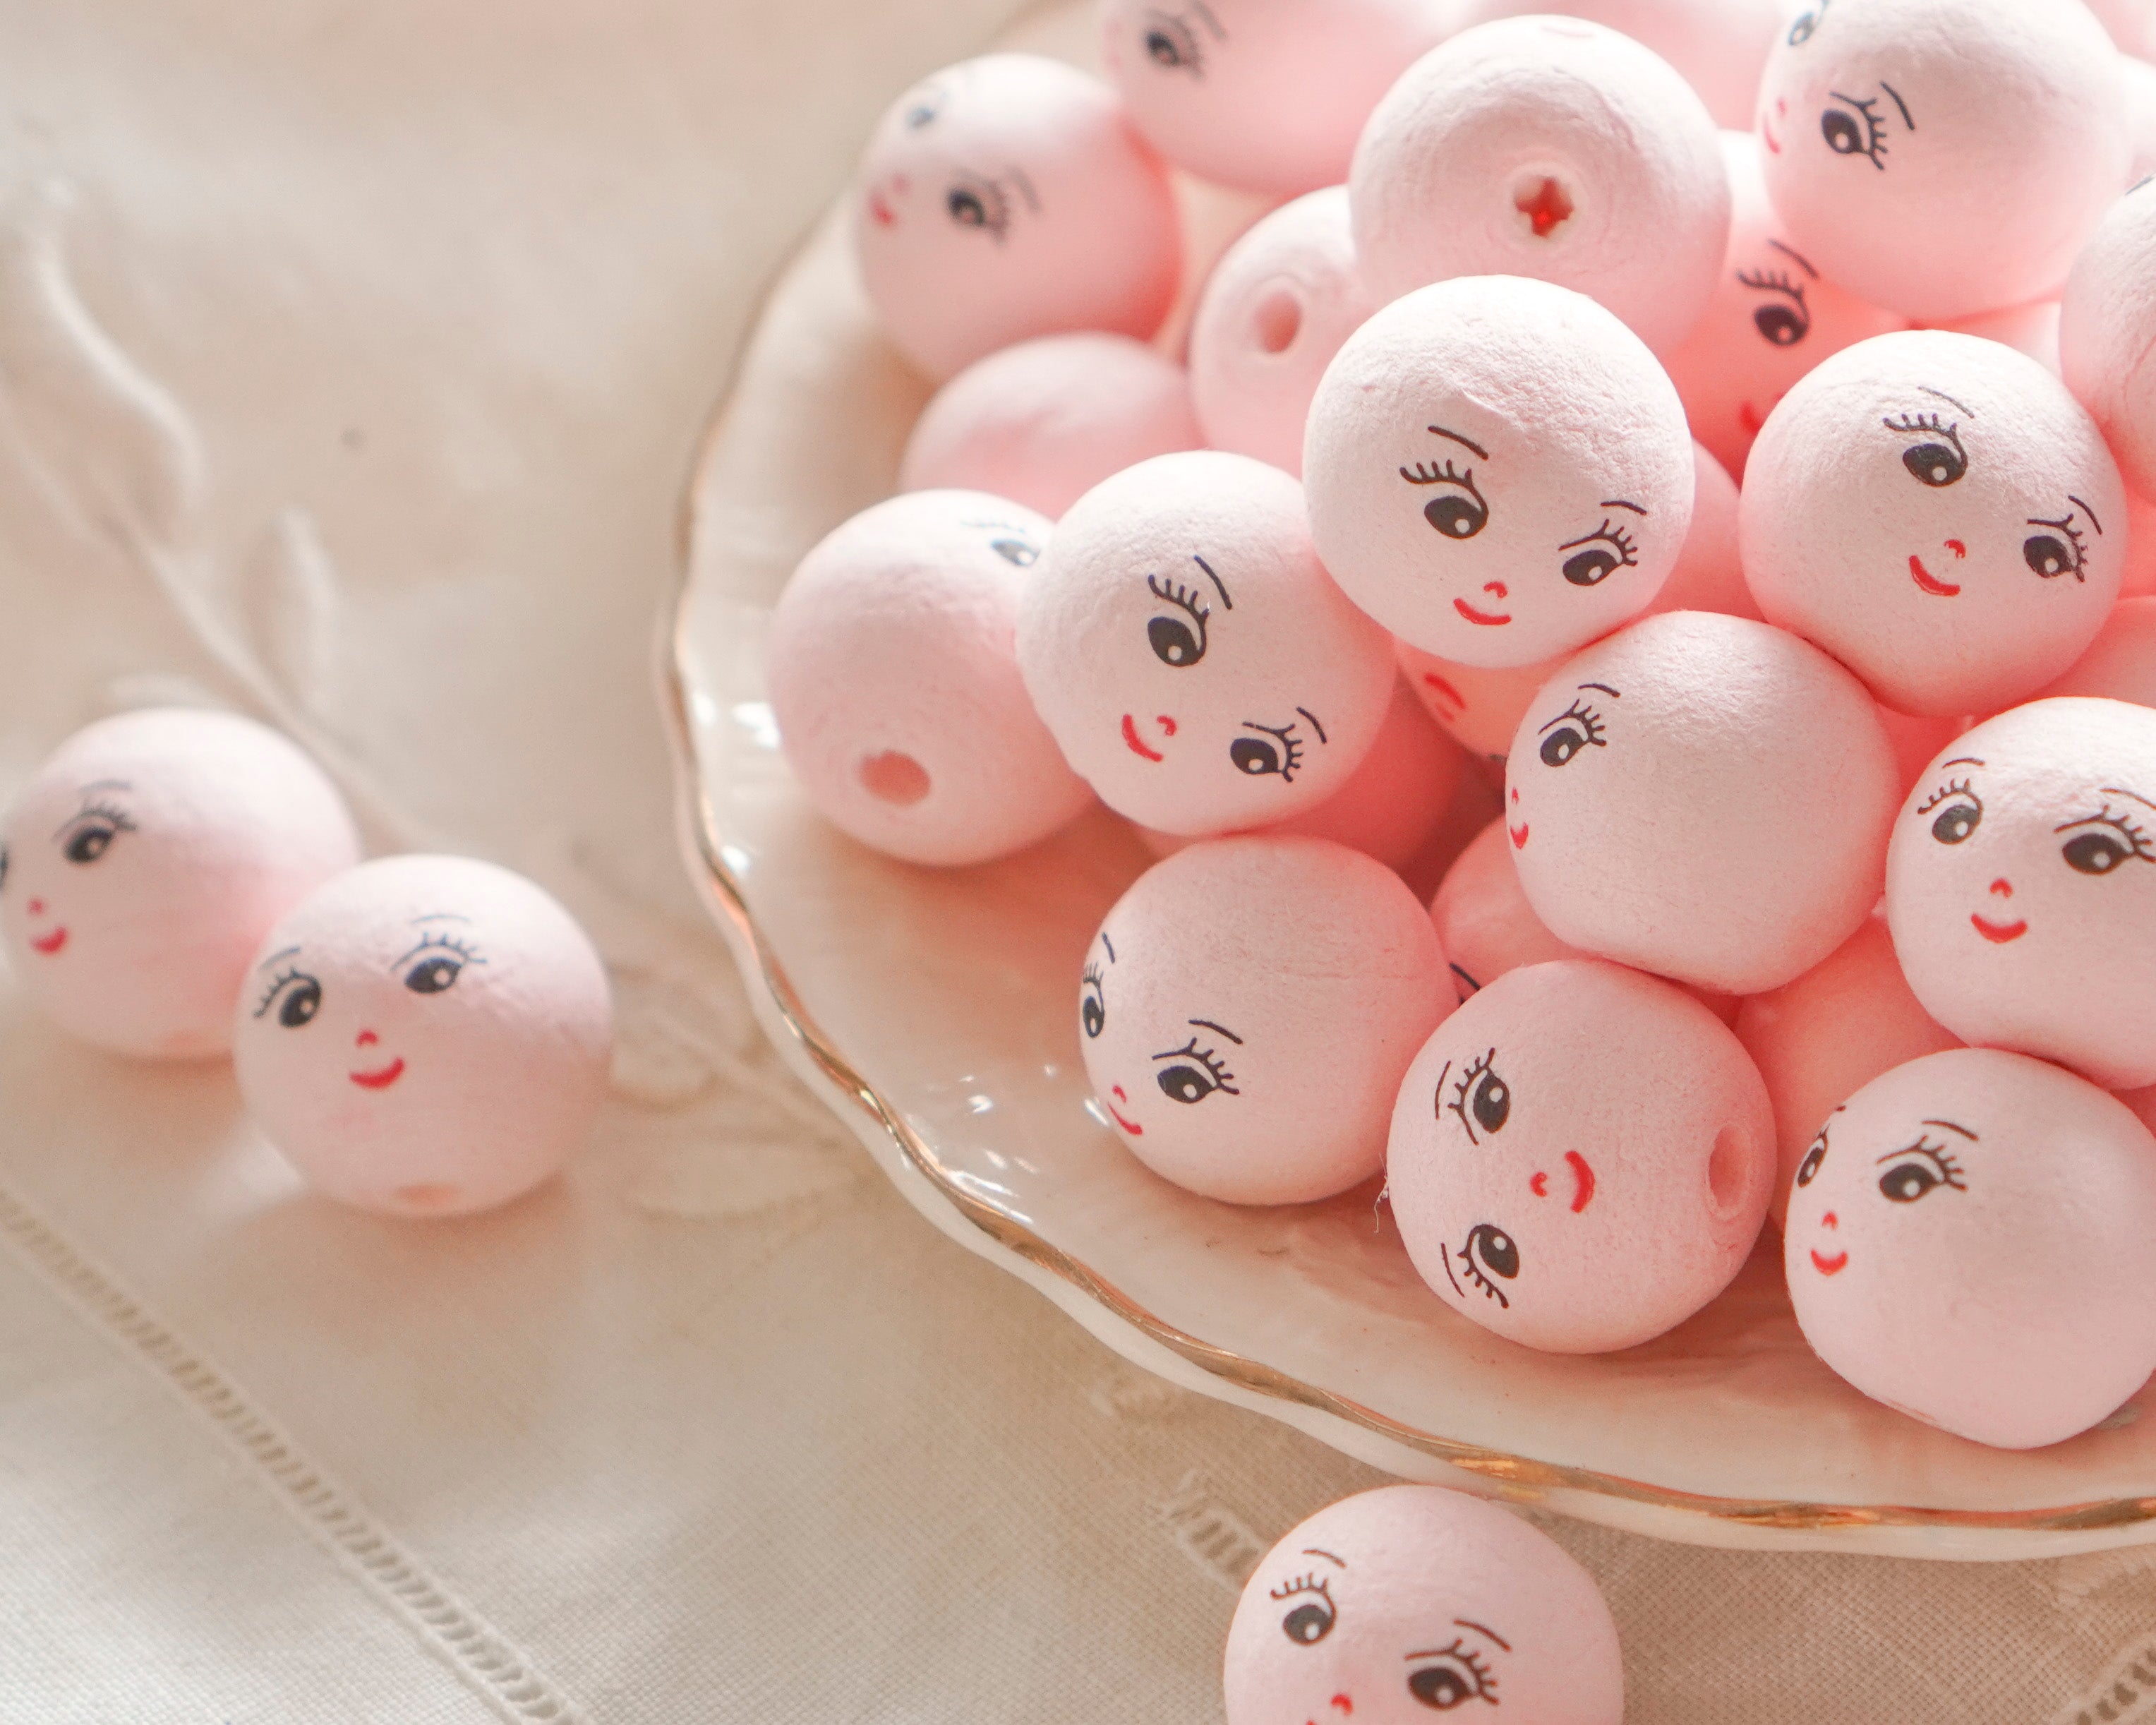 Mini Spun Cotton Heads: CHARM - 18mm Pink Vintage-Style Cotton Doll Heads, 12 Pcs.